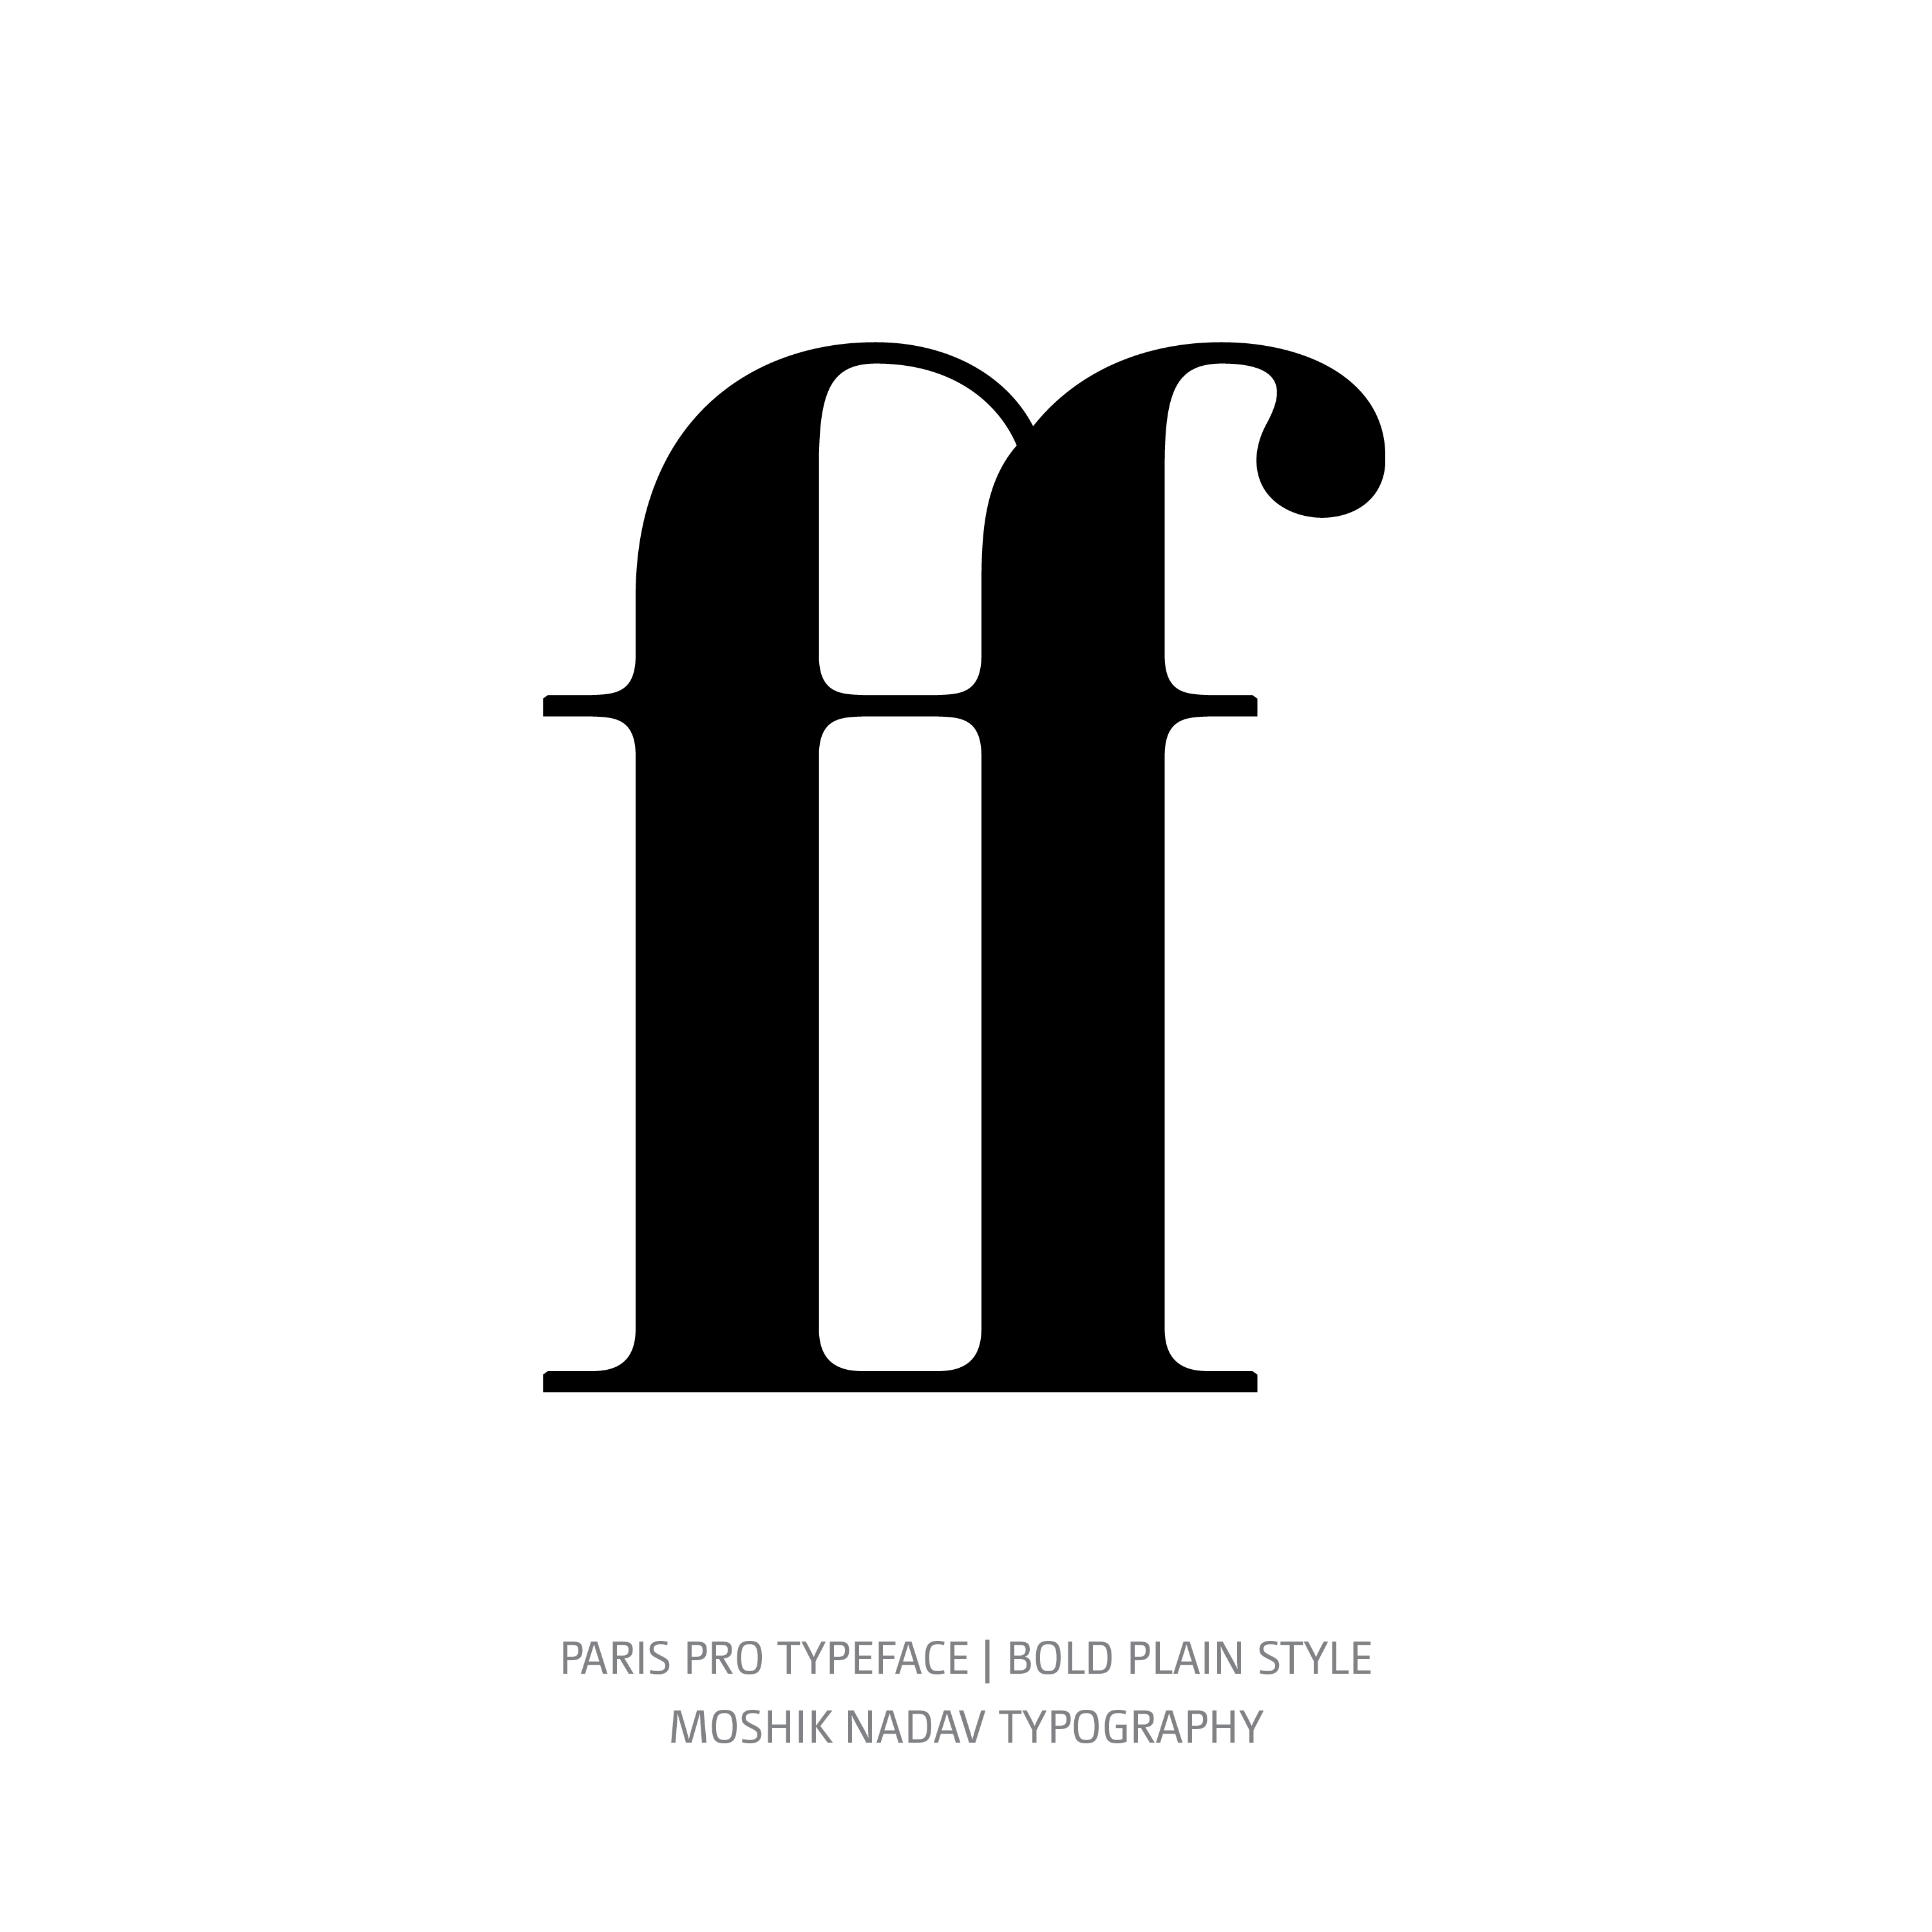 Paris Pro Typeface Bold ff ligature